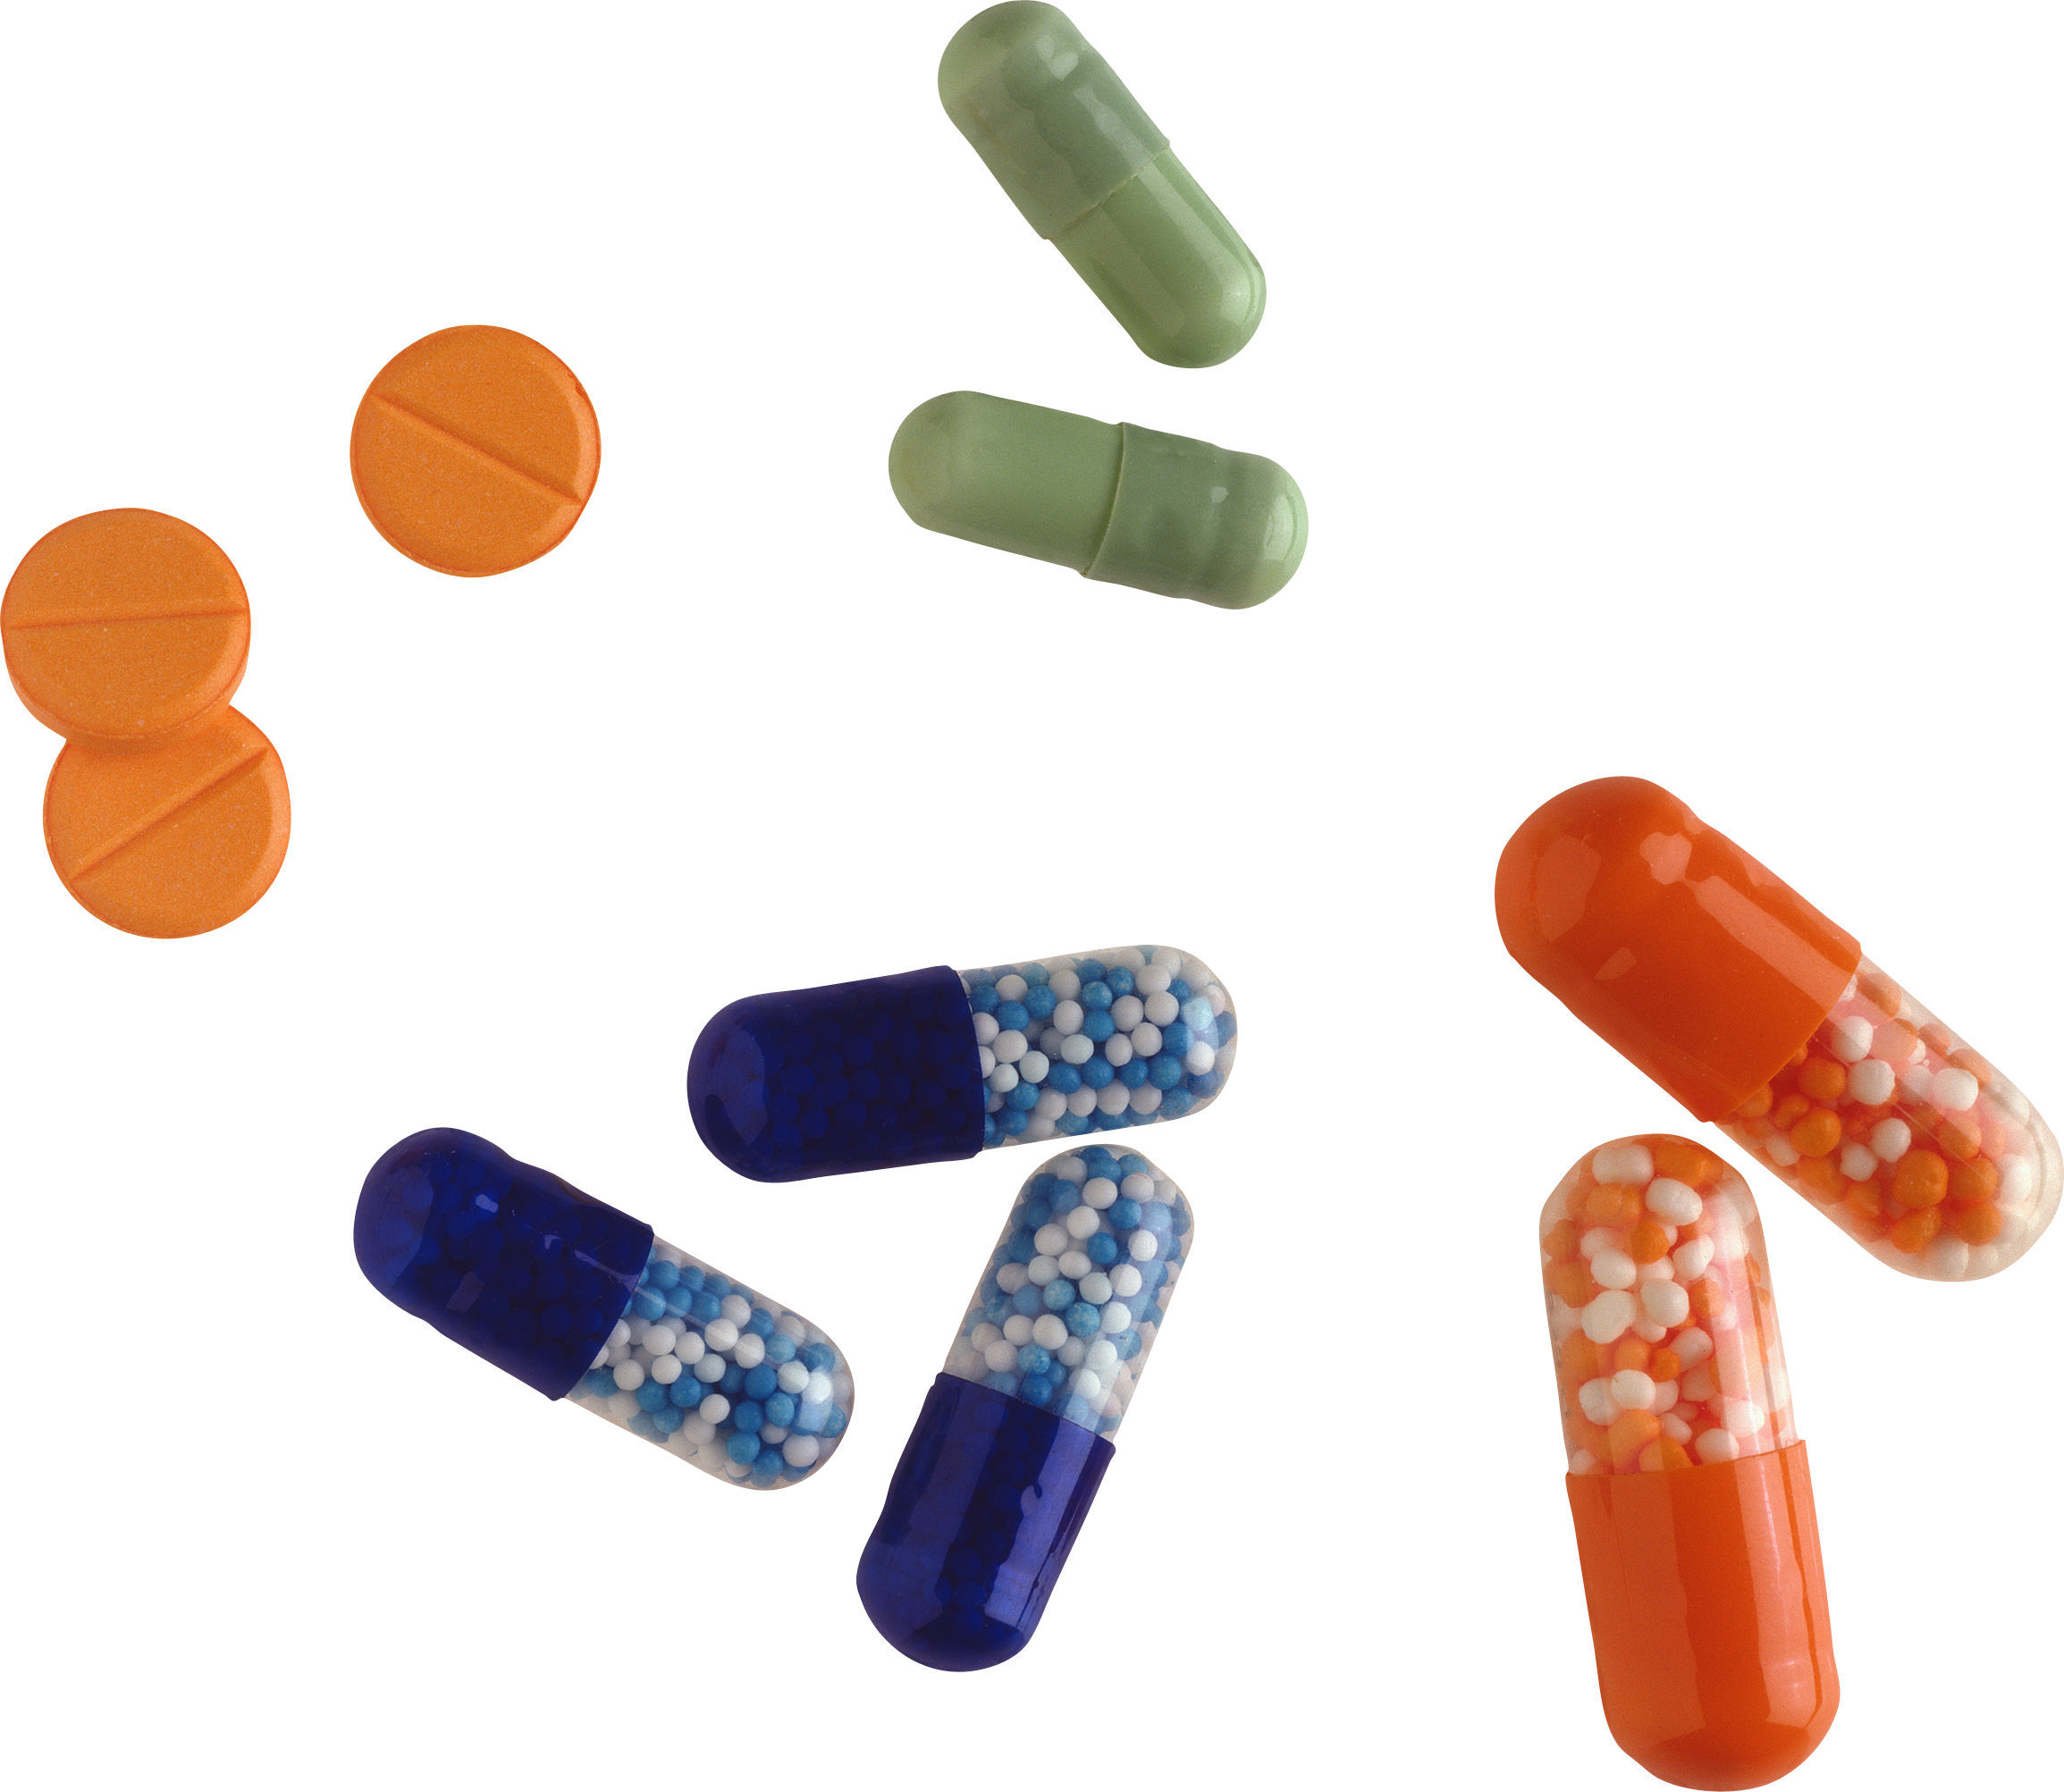 pills, tablets